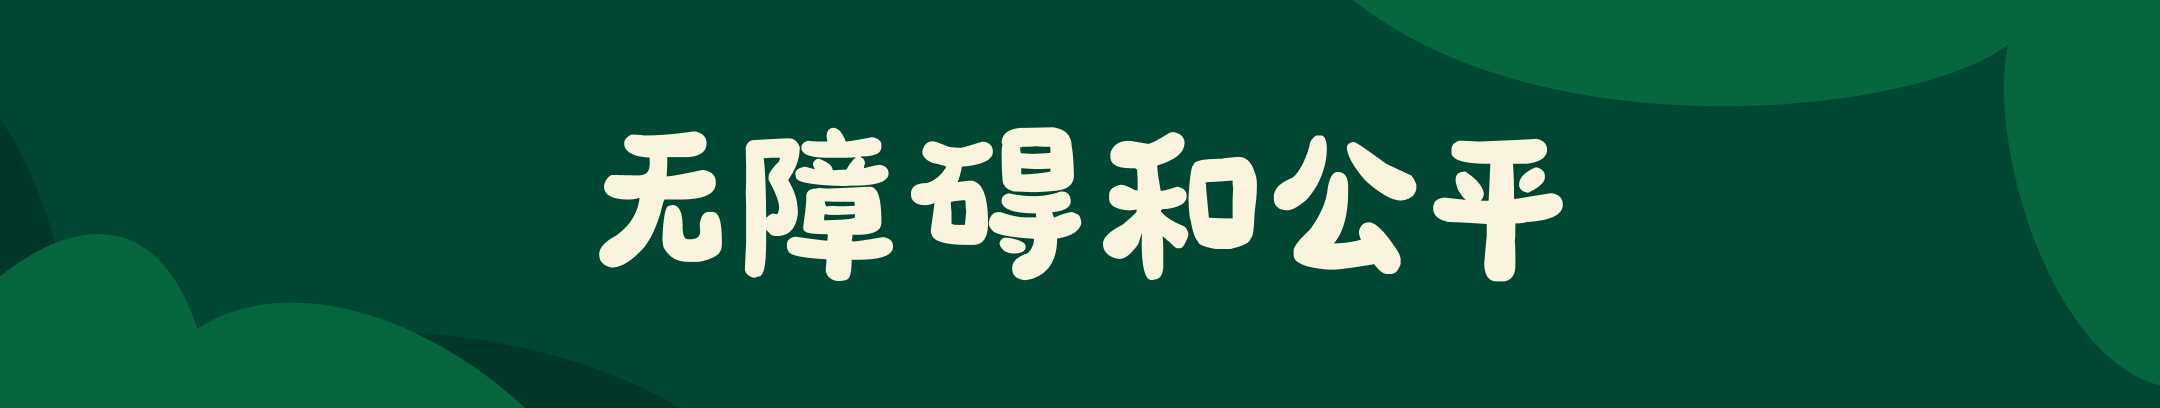 深绿色背景的宽幅 Banner，中间白色大字 “无障碍和公平”。